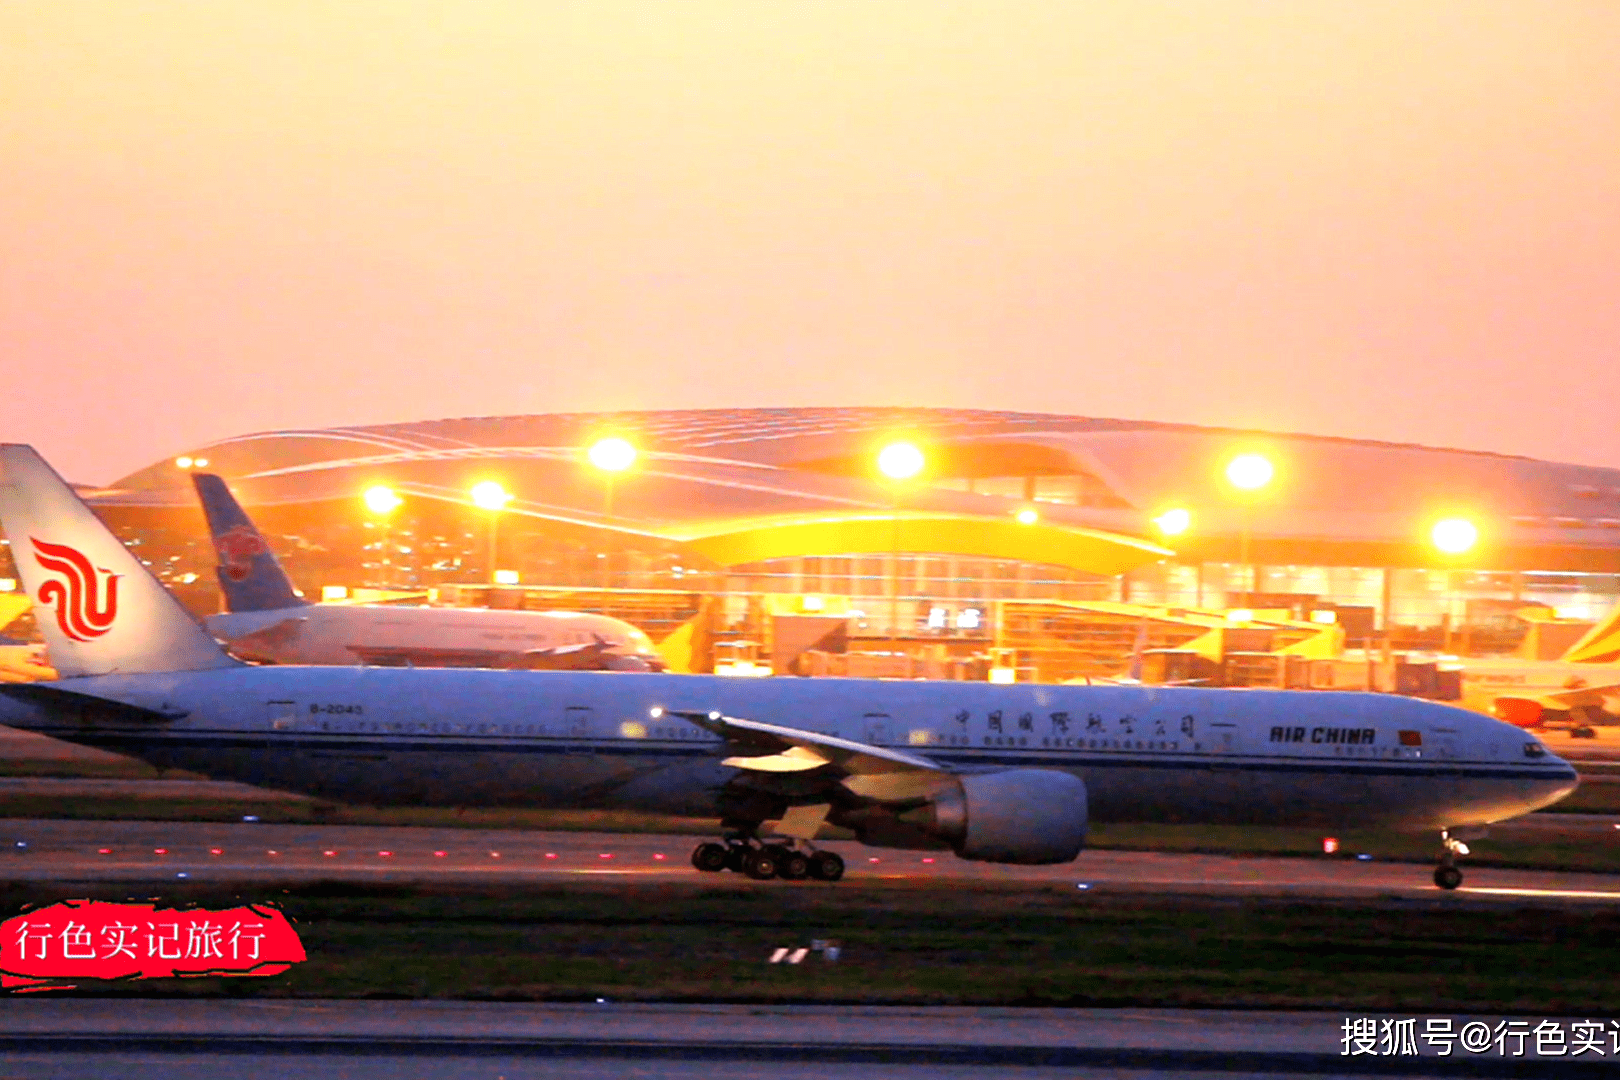 夜幕降临的广州白云机场飞机在璀璨的夜色中起降太美了